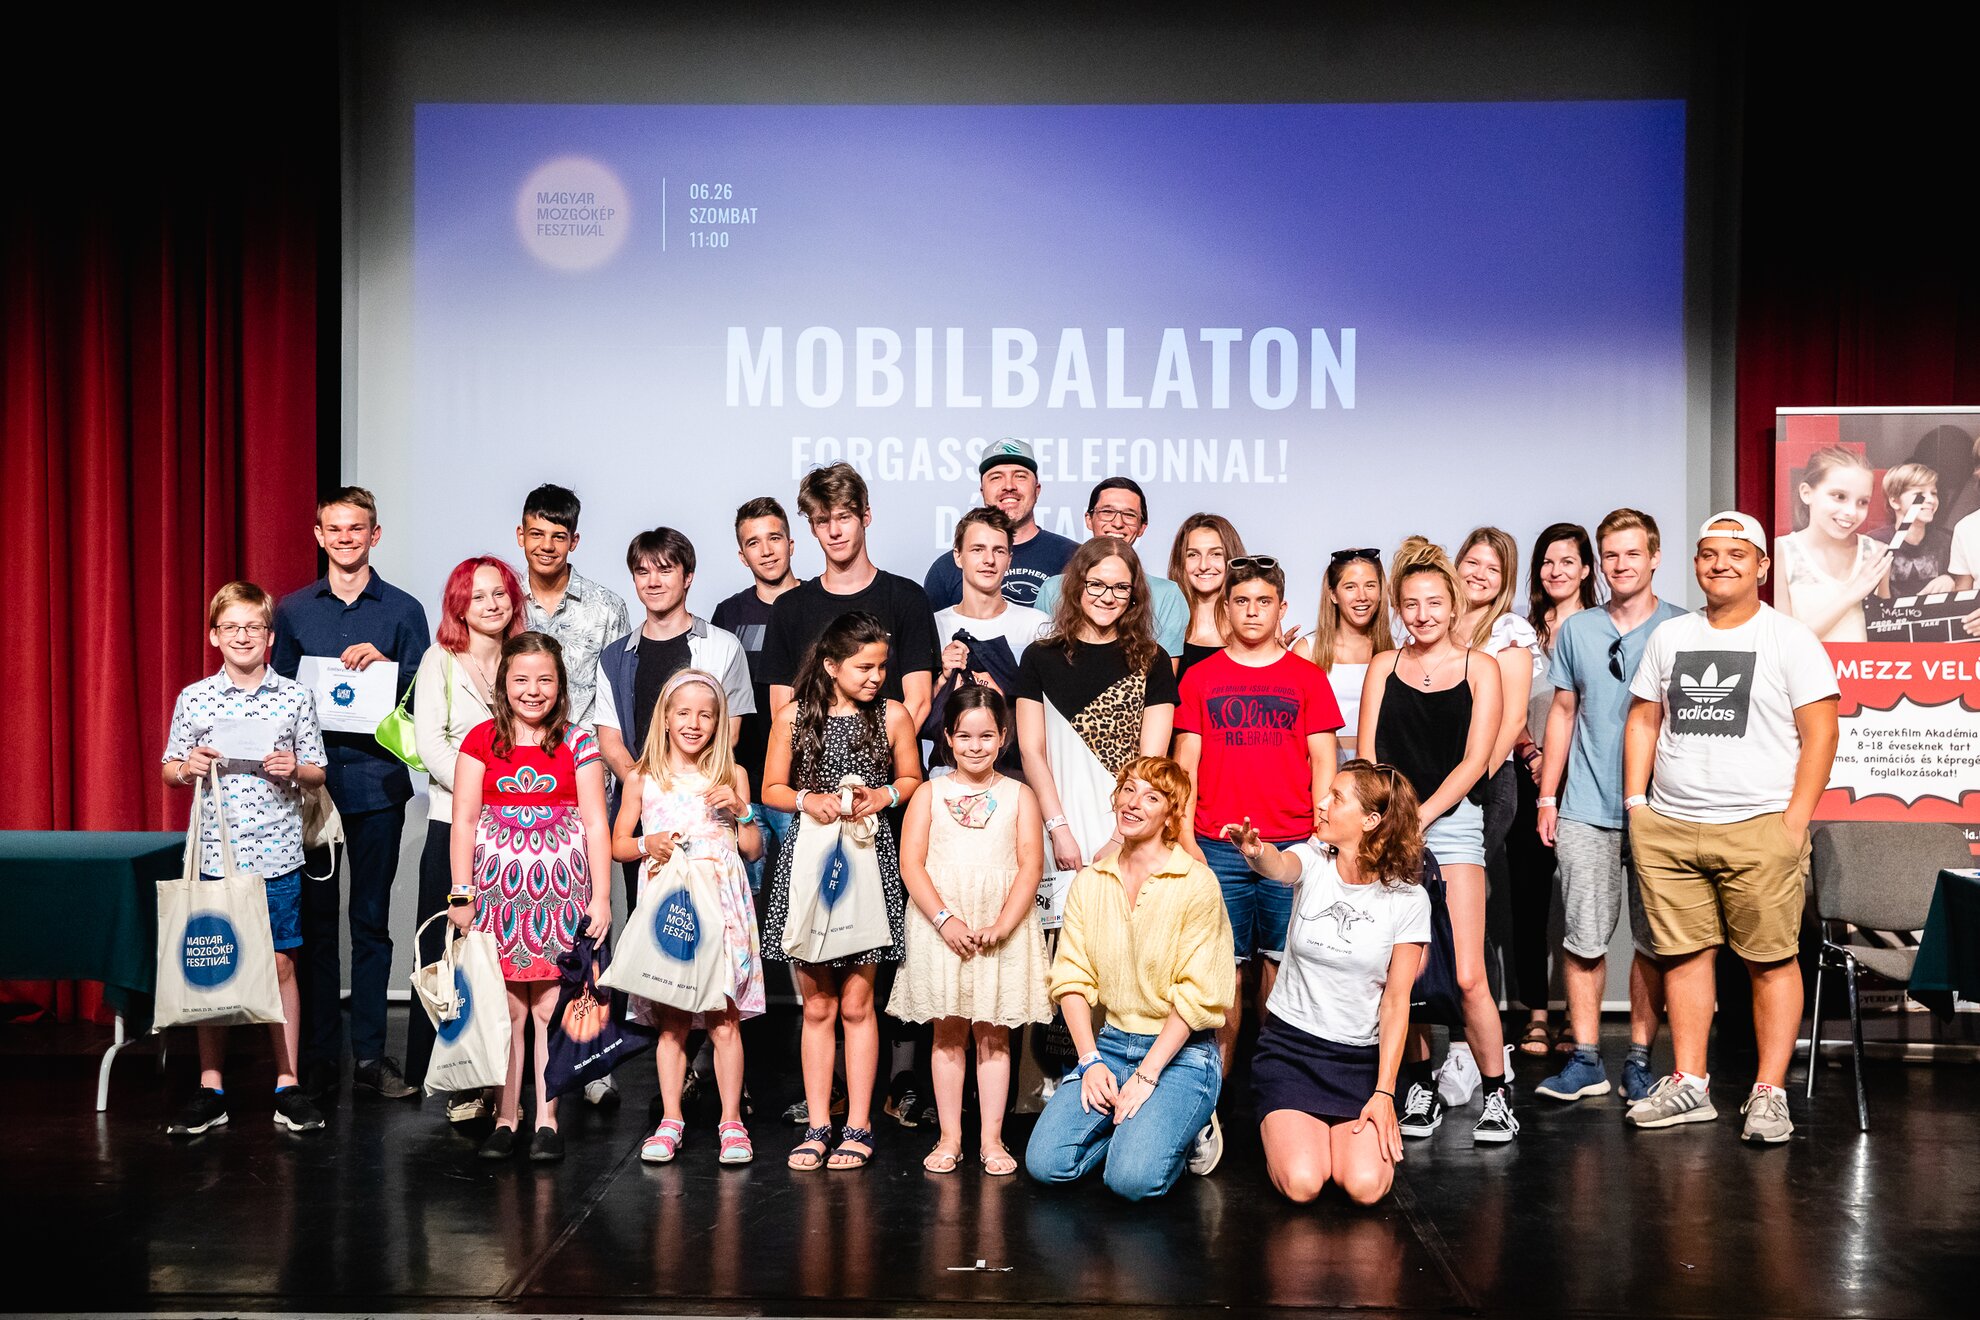 MobilBalaton vetítés és díjátadó a Magyar Mozgókép Fesztiválon